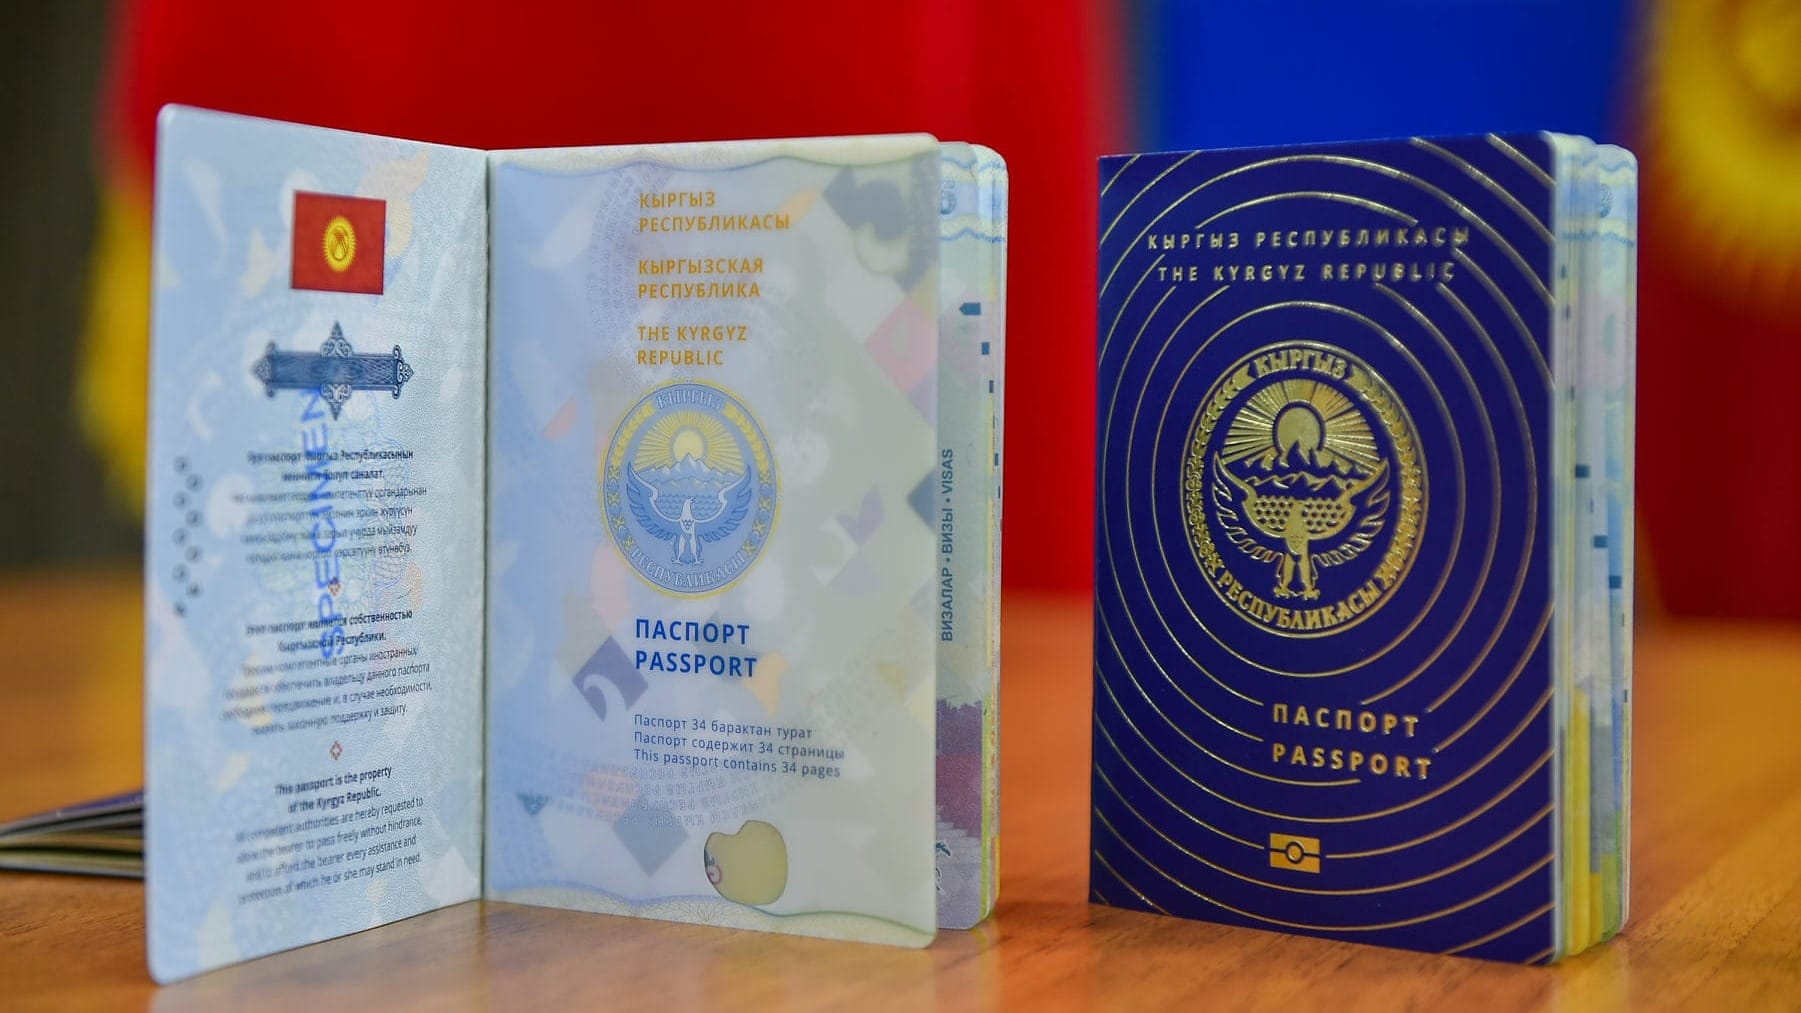 Оформить паспорт Кыргызстана можно будет через посредника — Минцифры подготовило пилотный проект